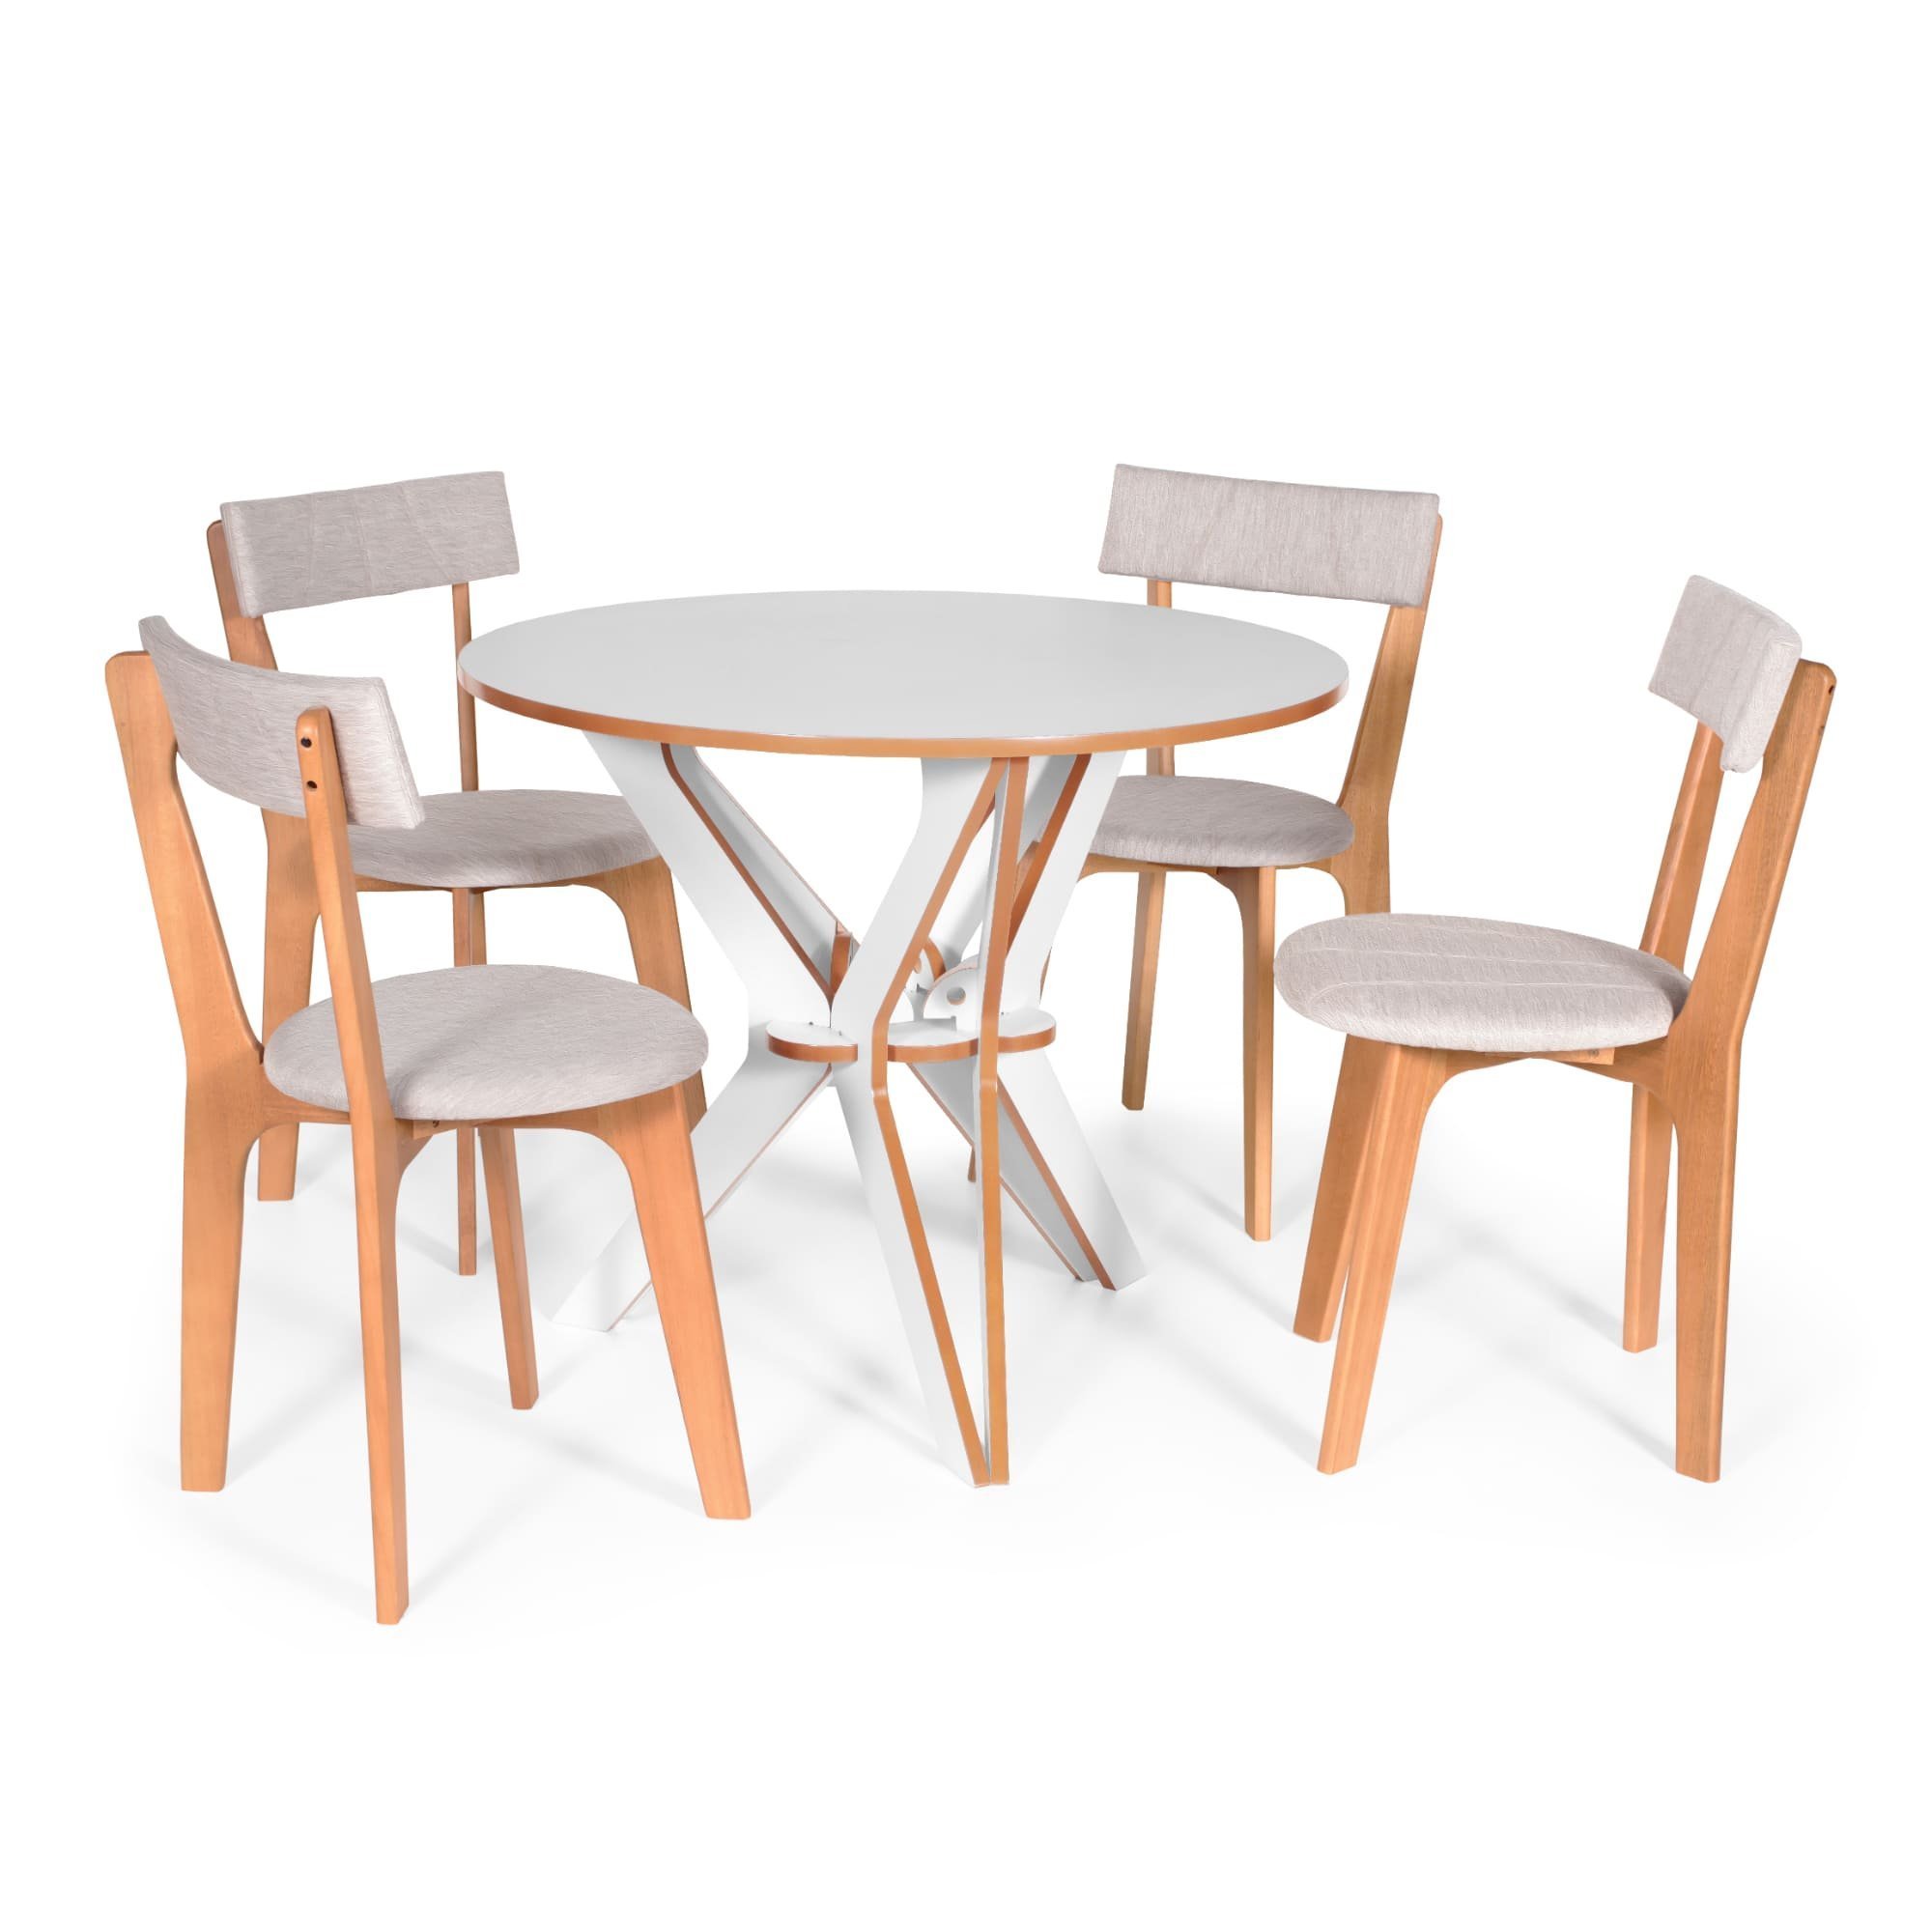 Conjunto De Mesa De Jantar Italia Com 4 Cadeiras Estofadas